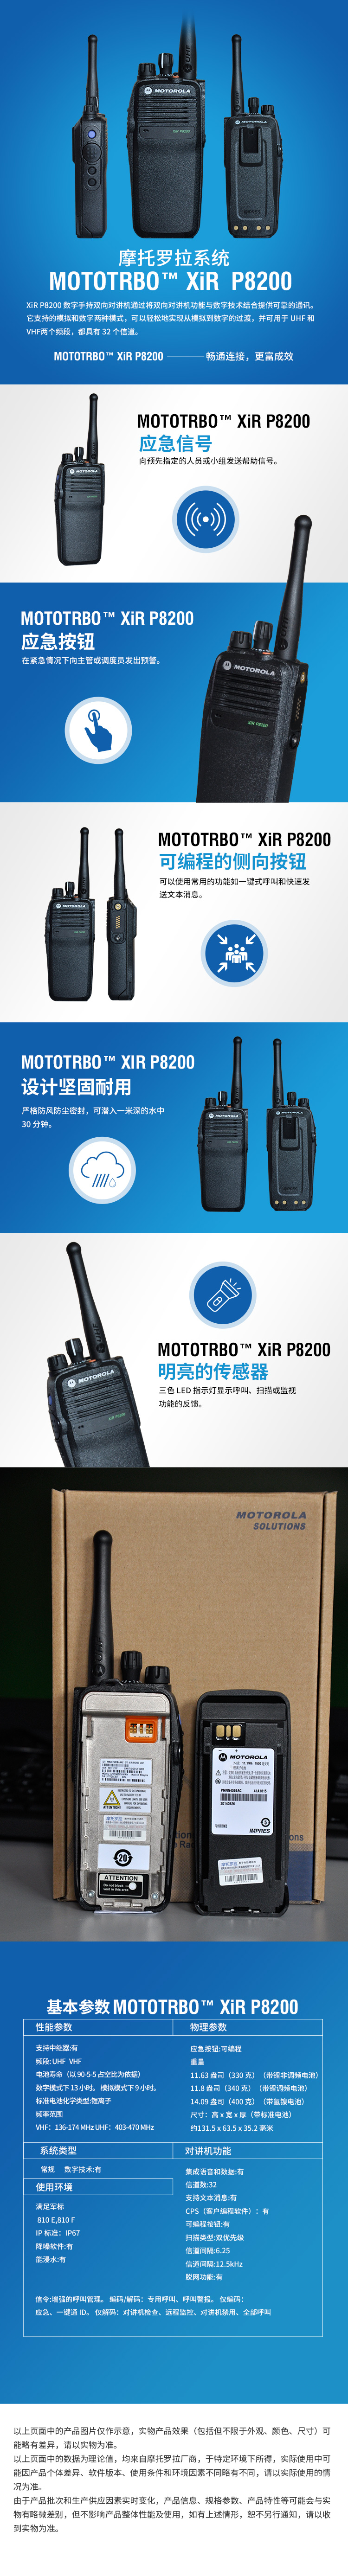 摩托罗拉(MOTOROLA) XiR P8200数字对讲机U段(403-470MHz 1100mH锂离子电池)